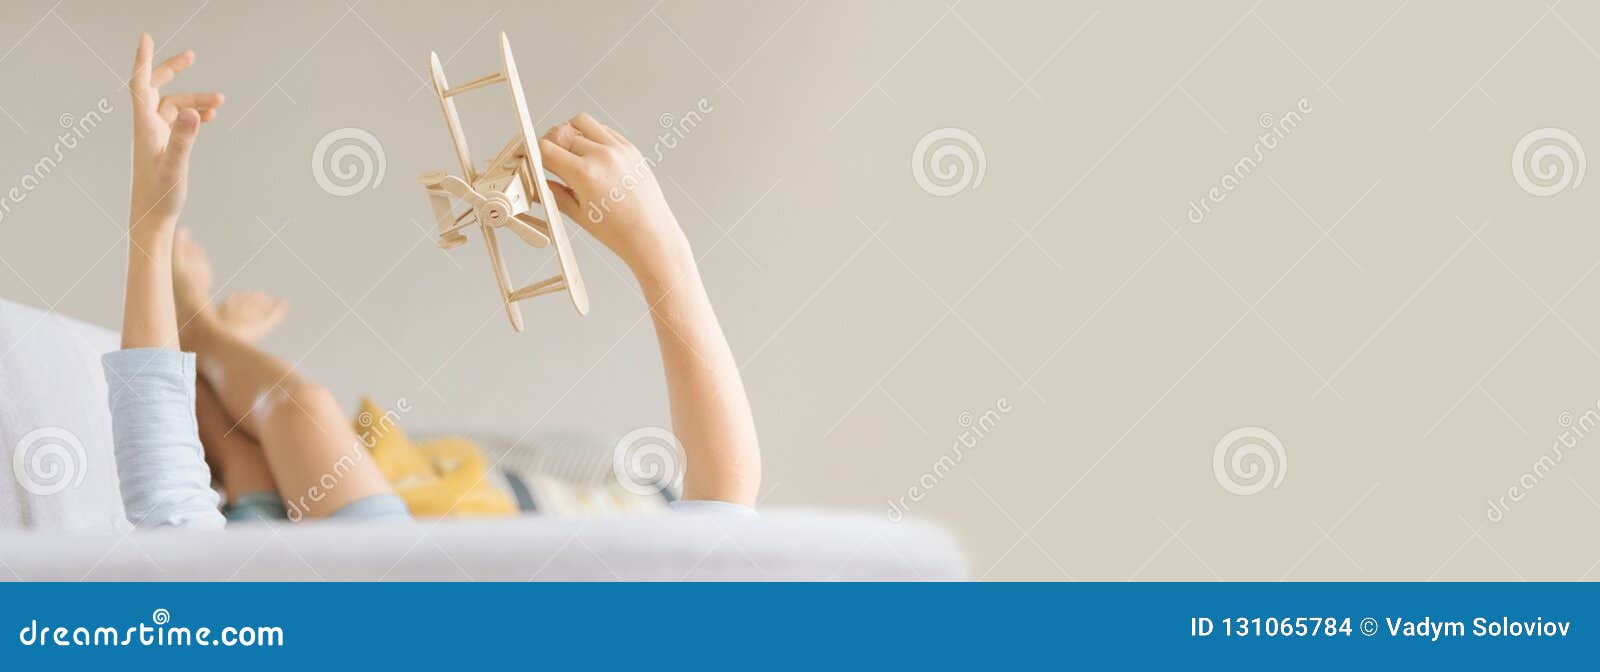 Il ragazzo si trova sul sofà e gioca un aereo del giocattolo Immagine con un più grande spazio della copia